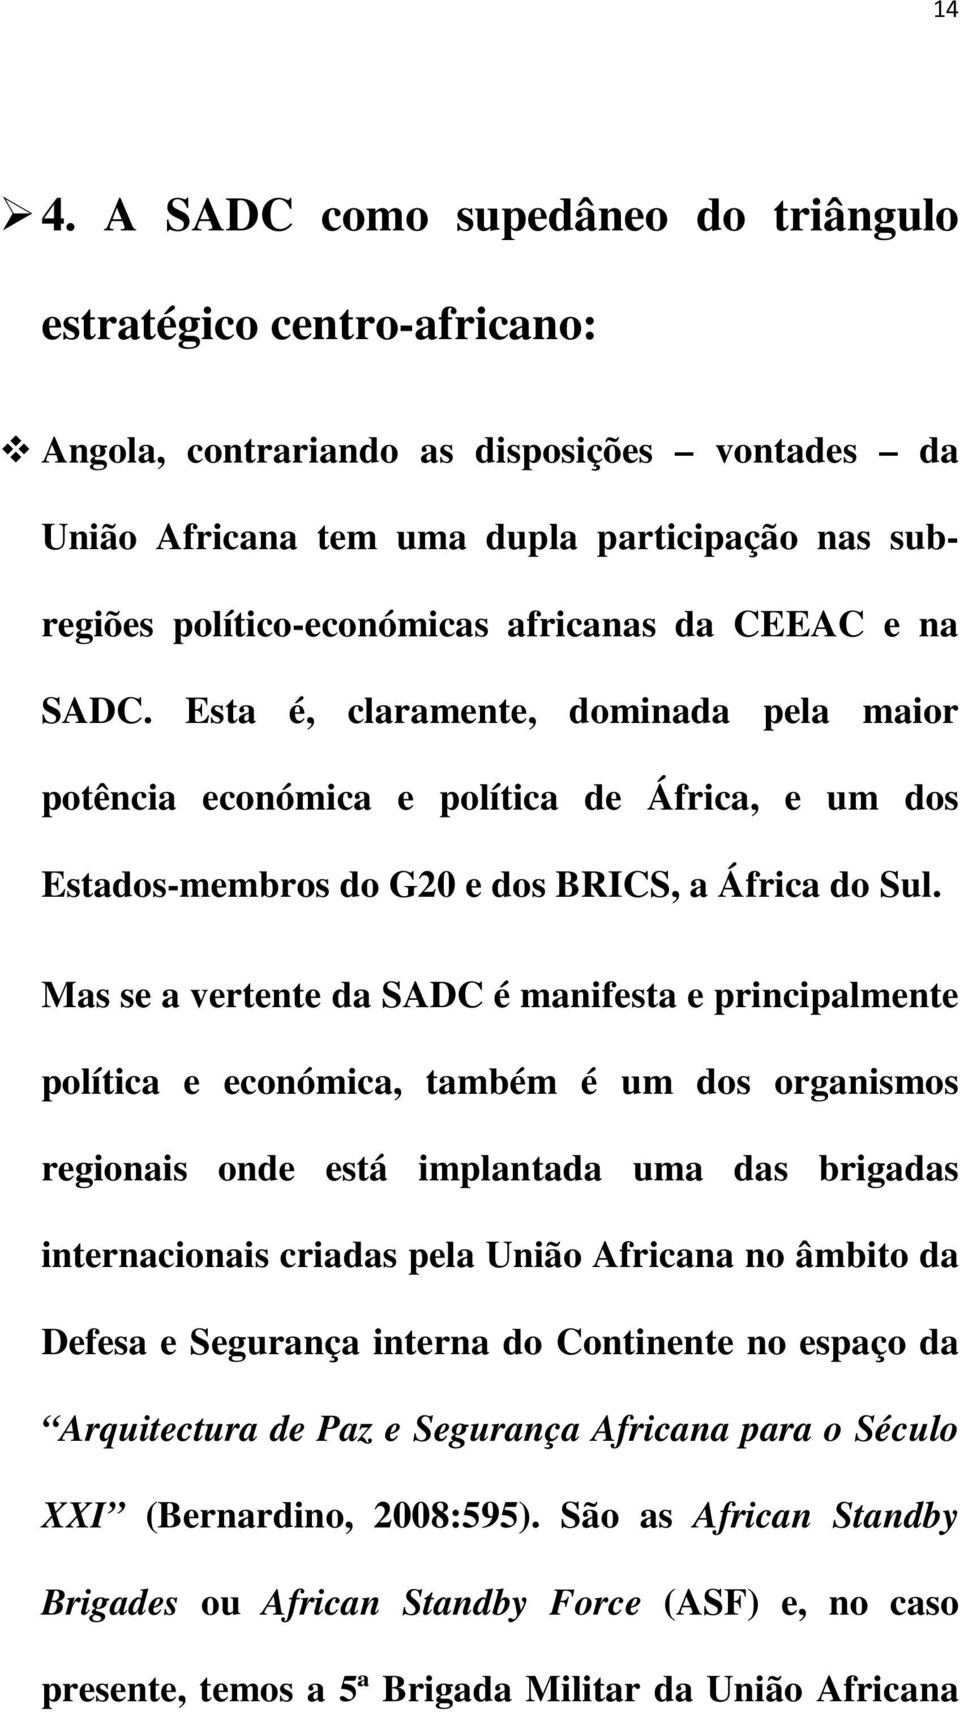 Mas se a vertente da SADC é manifesta e principalmente política e económica, também é um dos organismos regionais onde está implantada uma das brigadas internacionais criadas pela União Africana no